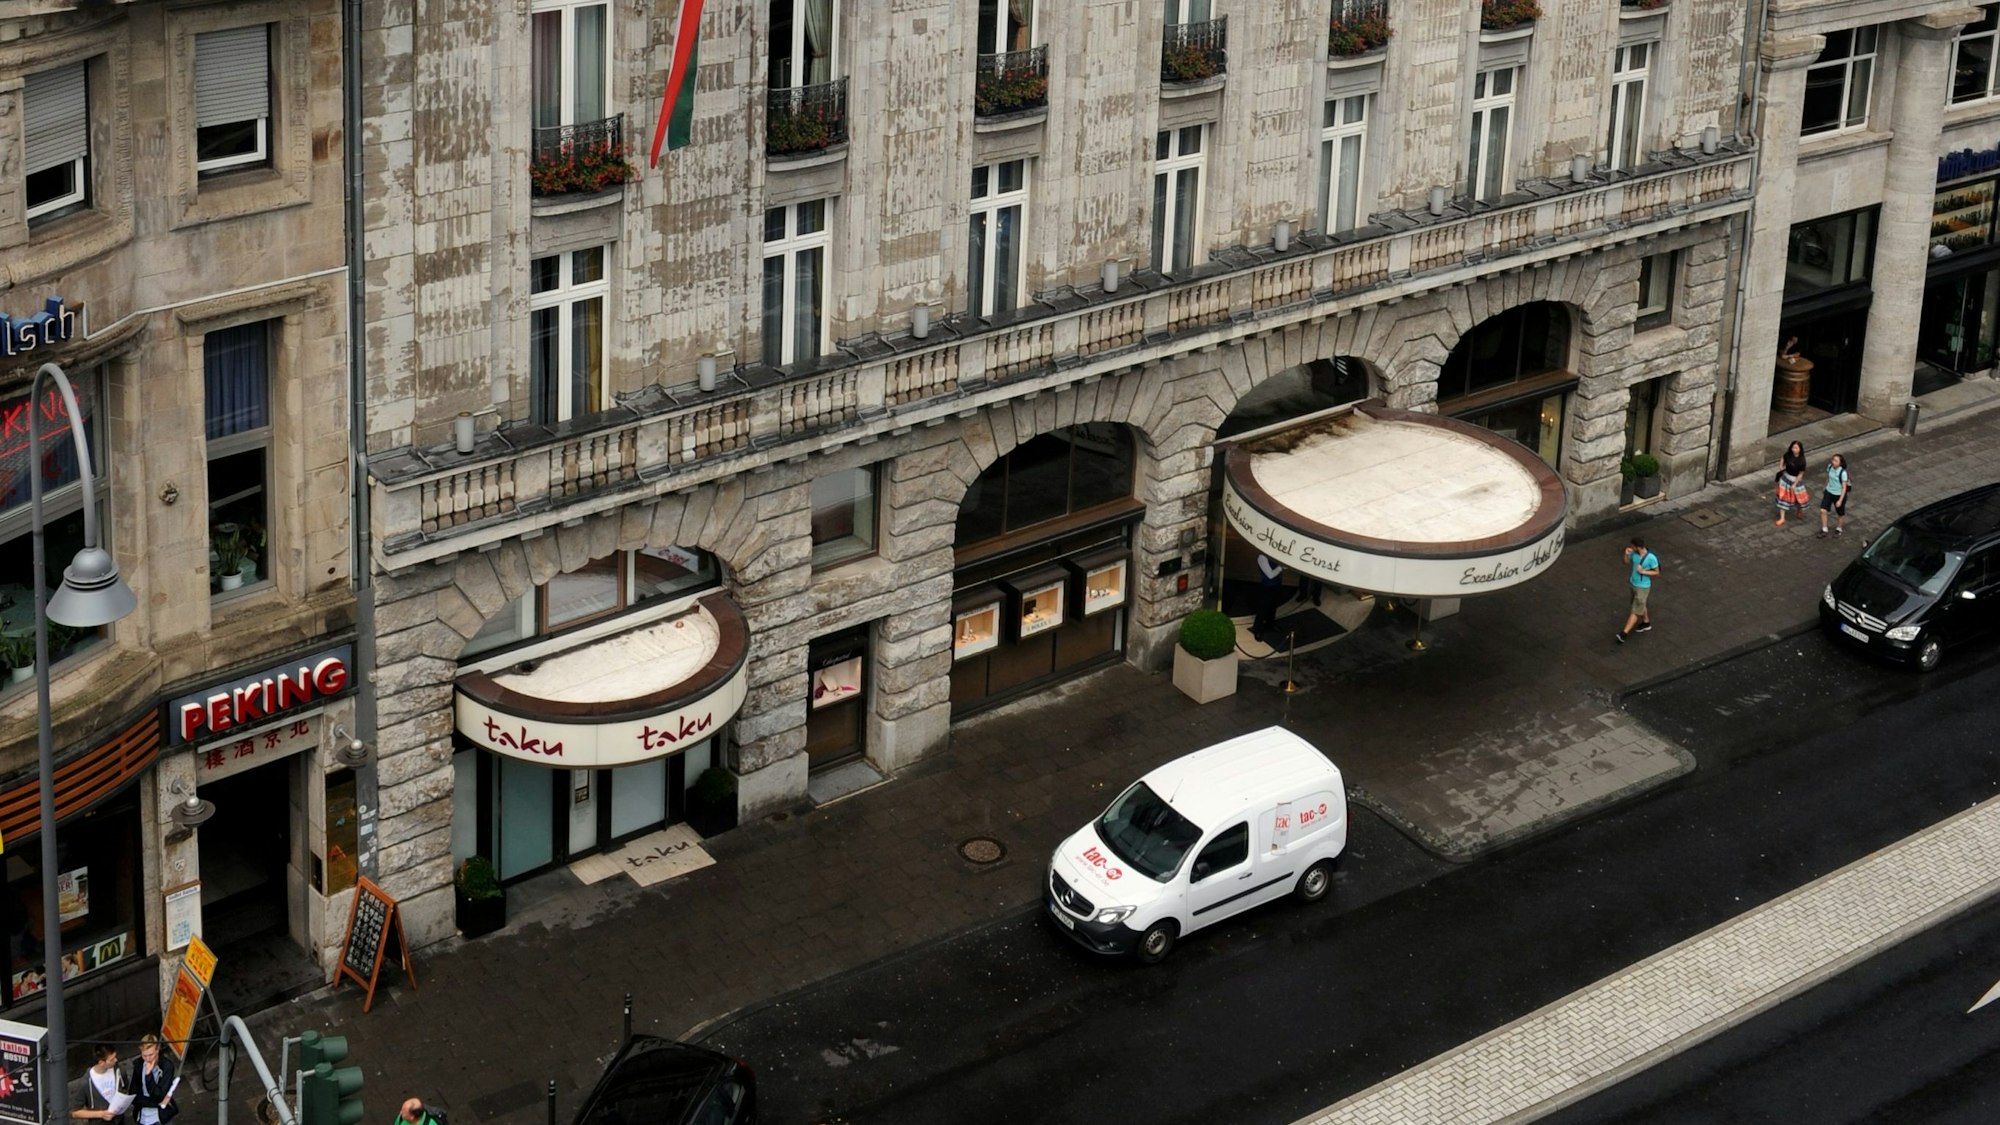 Der Eingang des Hotel Excelsior in Köln